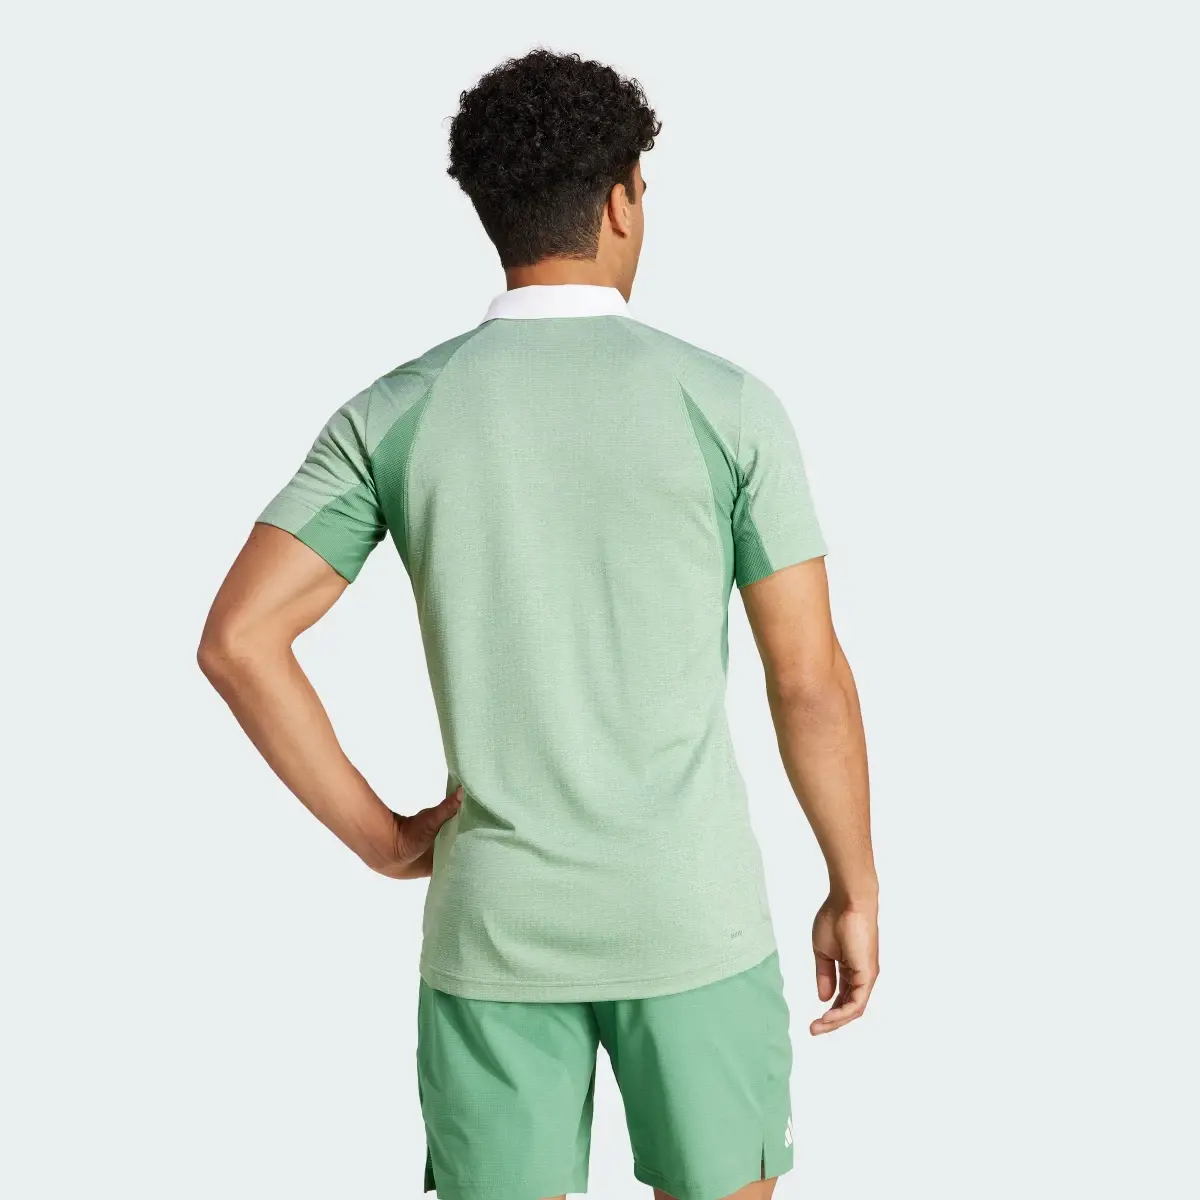 Adidas Tennis FreeLift Poloshirt. 3